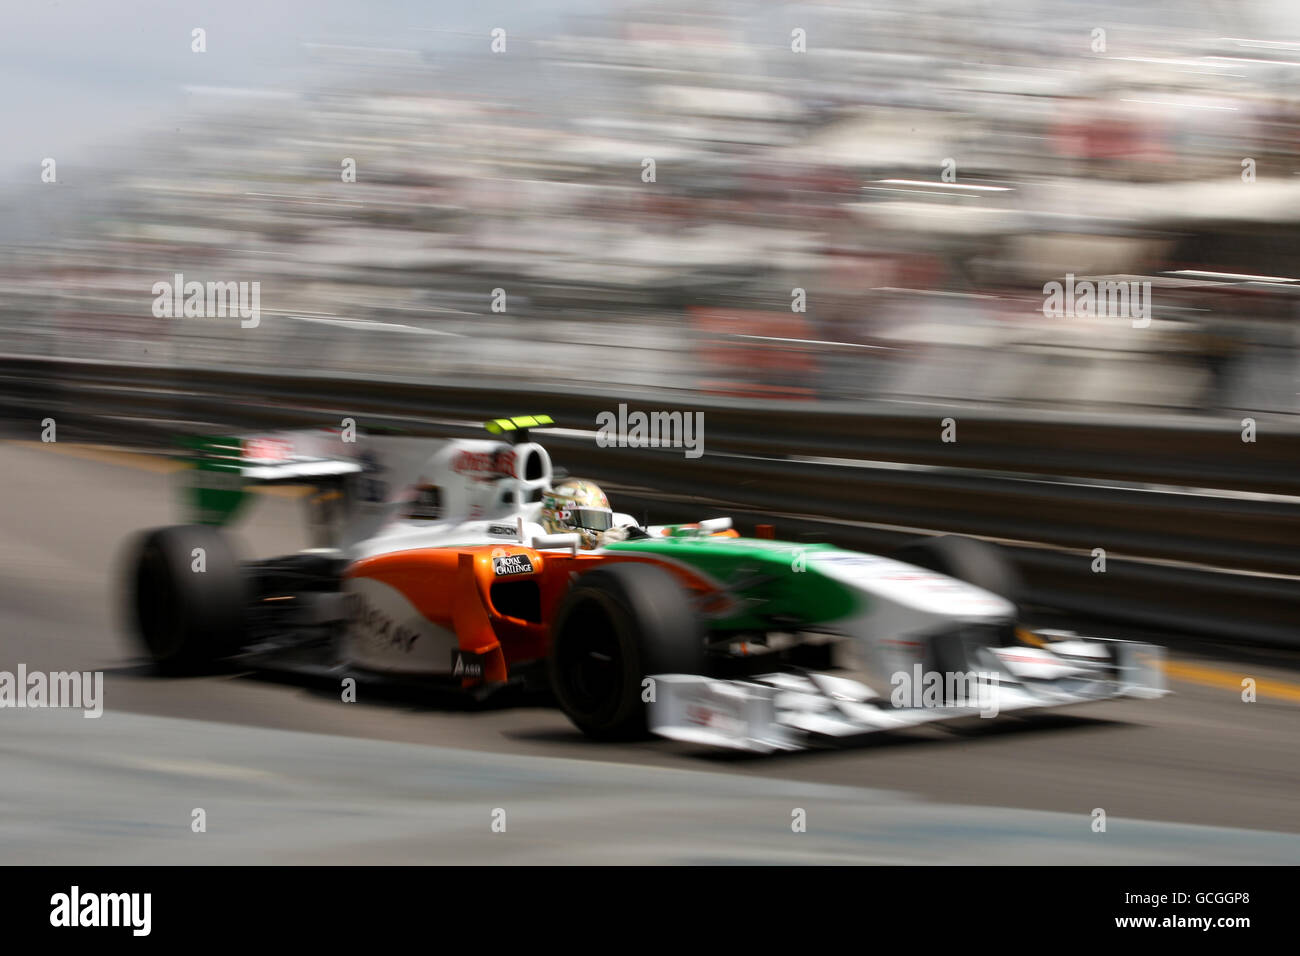 Carreras de Fórmula Uno - Gran Premio de Mónaco - Práctica y calificación - Circuito de Mónaco. Adrian Sutil (GER), Fuerza India. Foto de stock